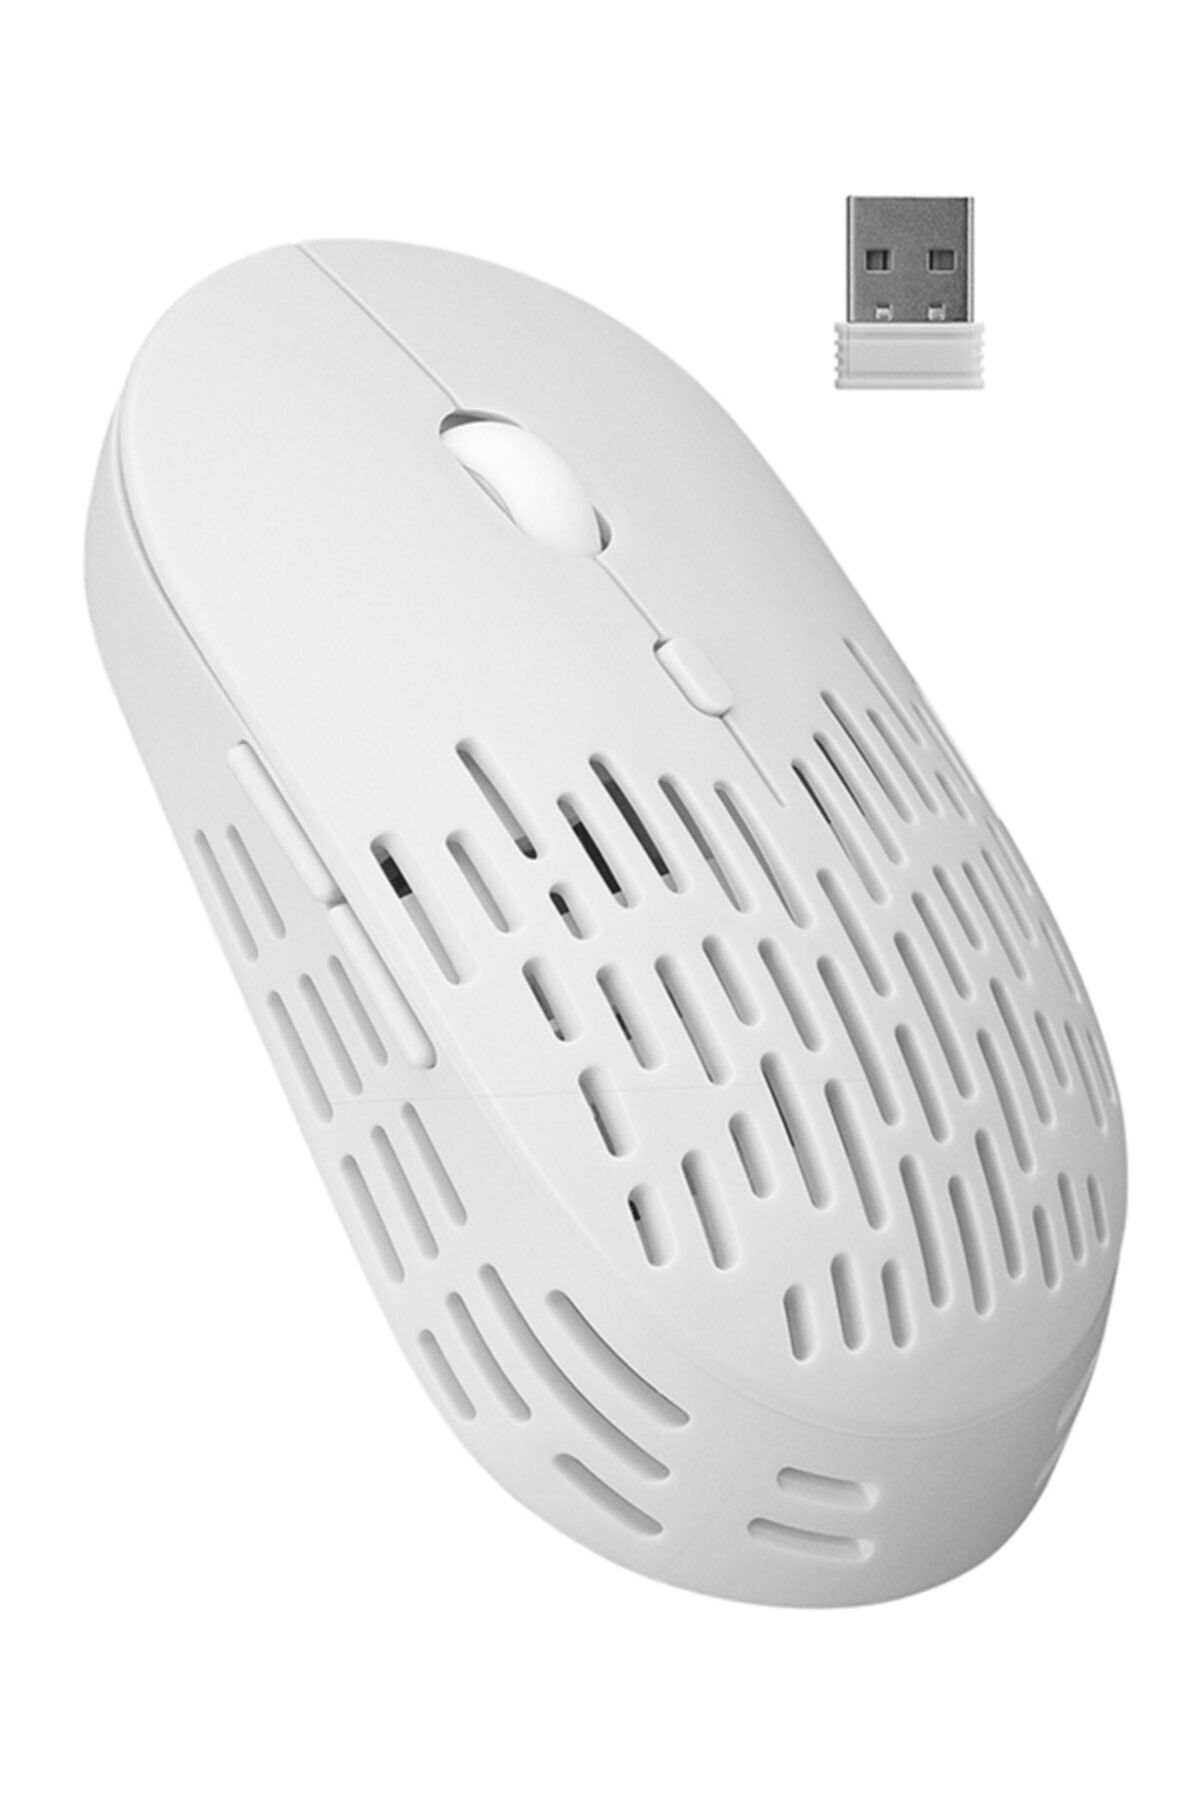 Altec Lansing Albm7422 Şarj Edilebilir Beyaz Renkli 1600dpi Optik Kablosuz Mouse